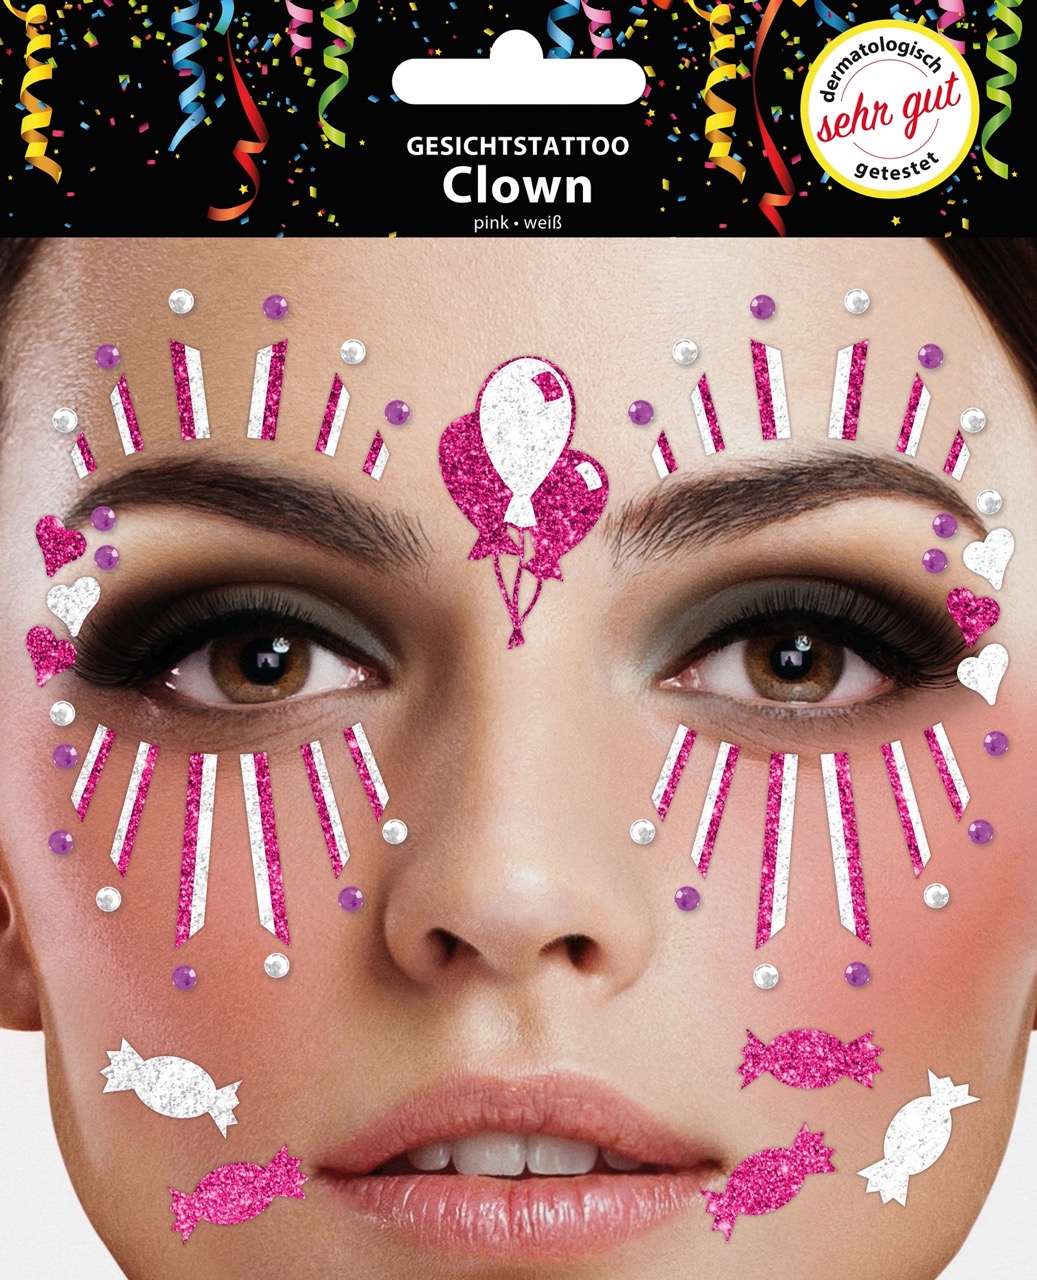 Gesichts-Tattoo Clown pink weiß